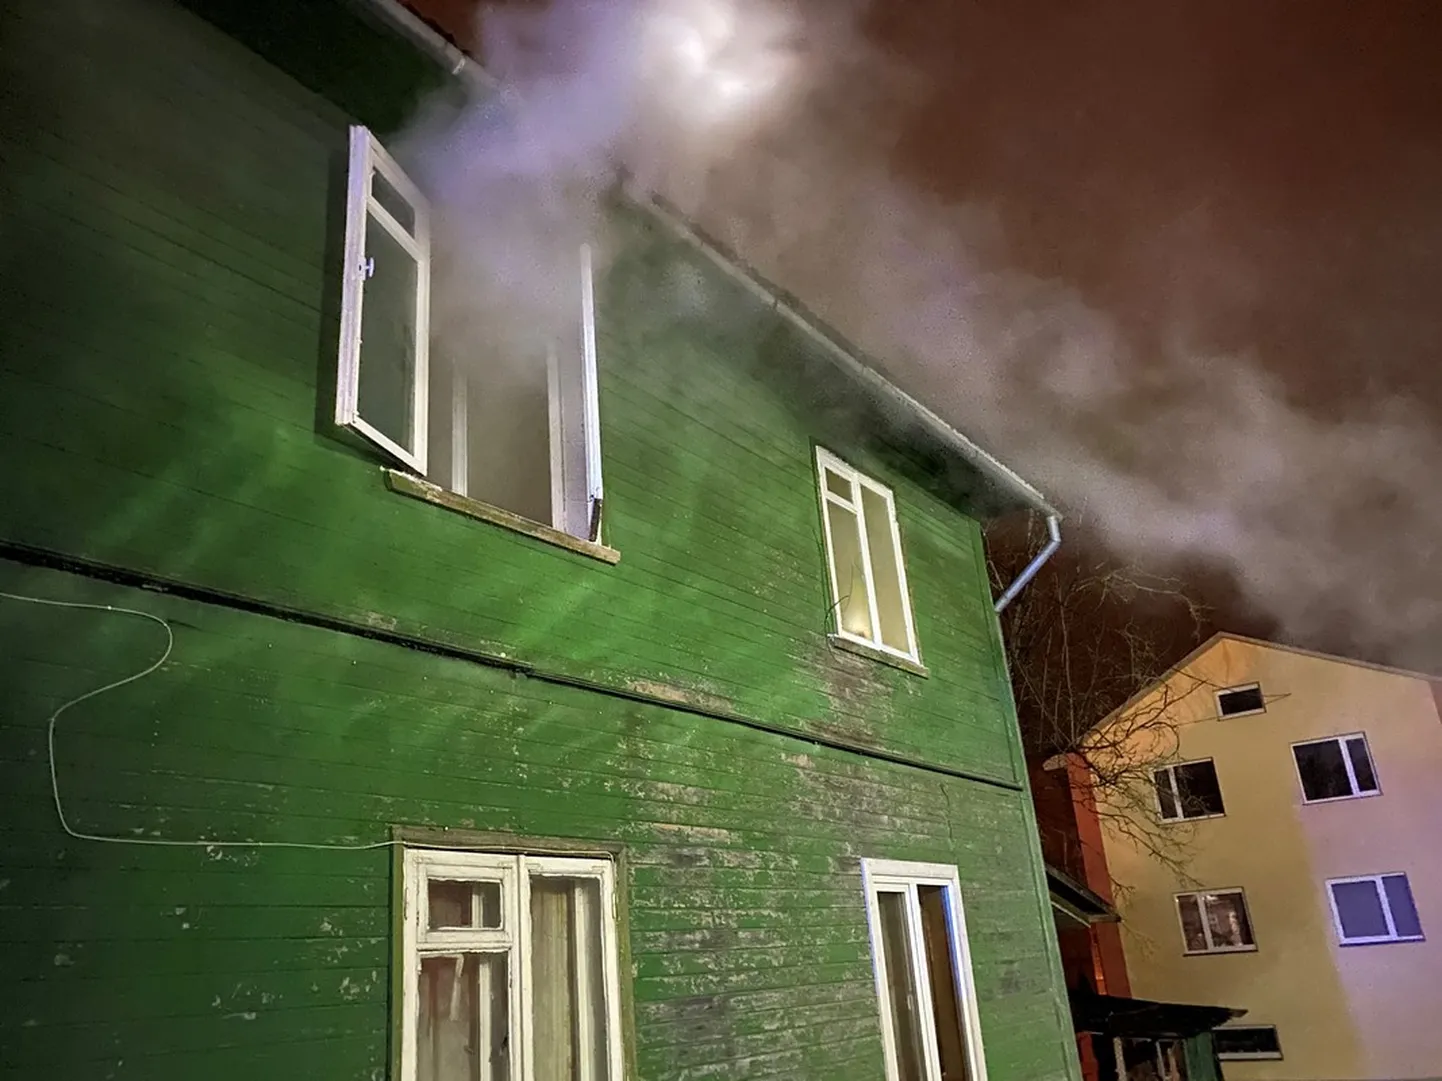 Valgas Kesk tänaval puhkes tulekahju. Päästjad leidsid korterist teadvusetu mehe.